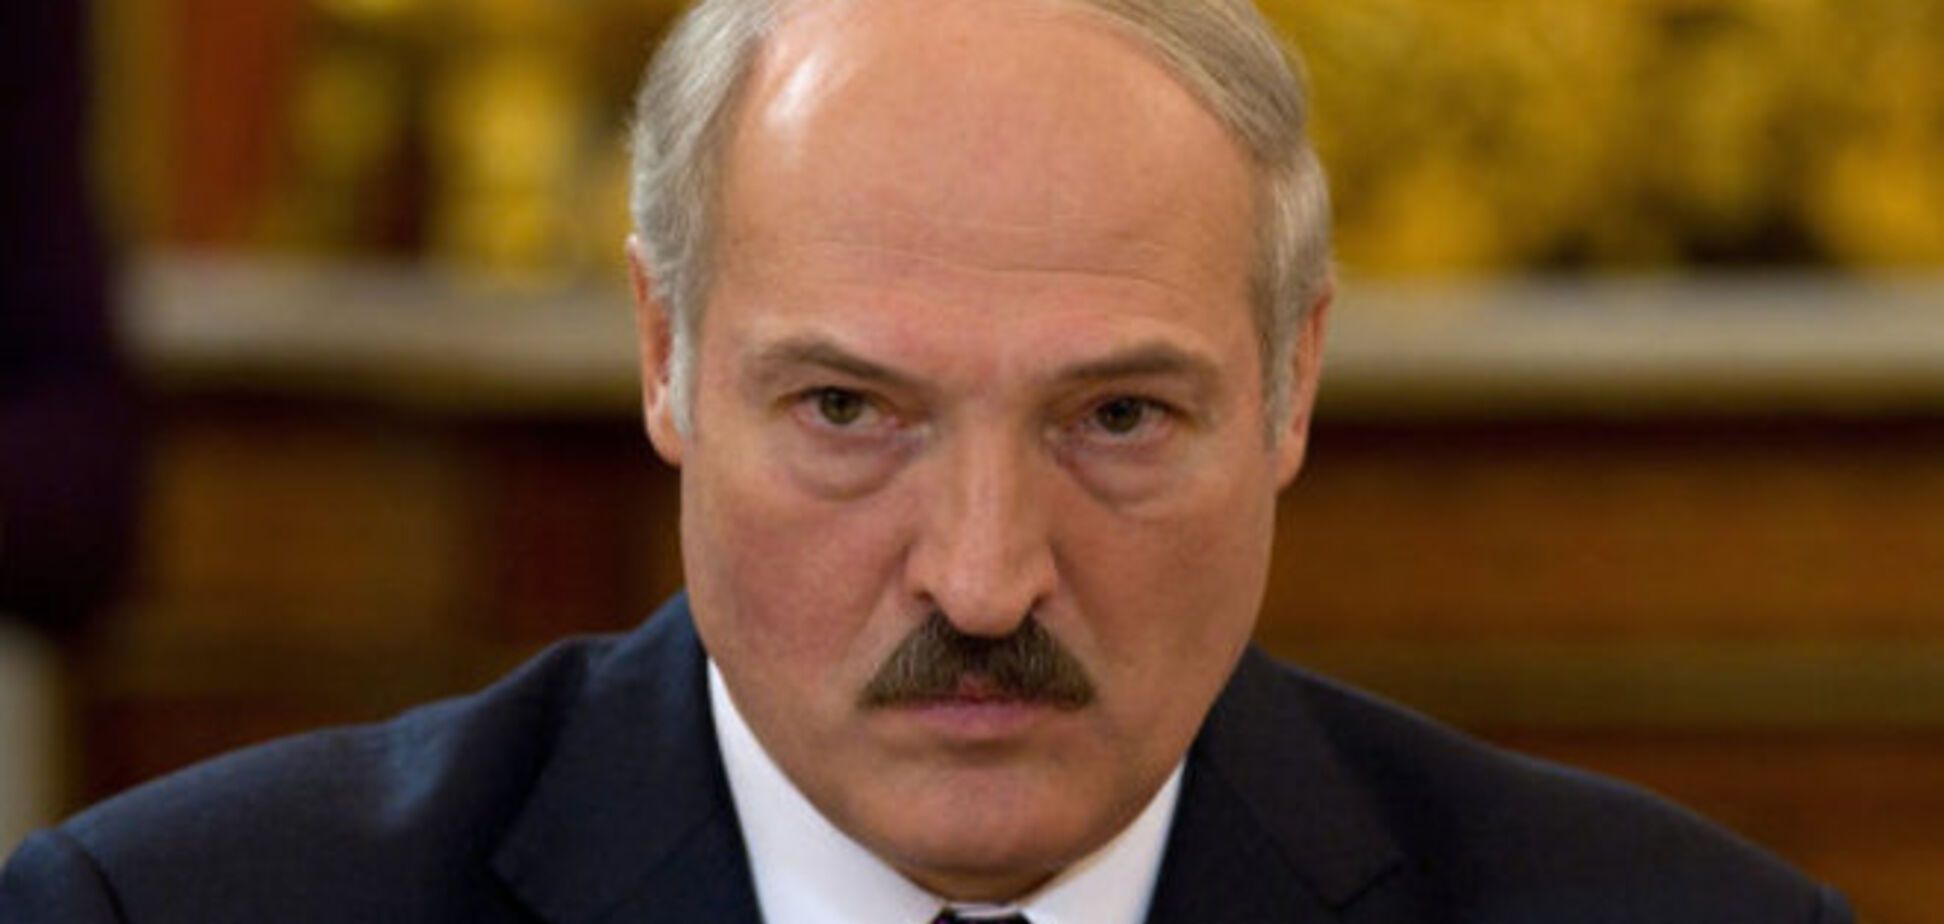 Они обиделись:  в Госдуме обвинили Лукашенко в предательстве России